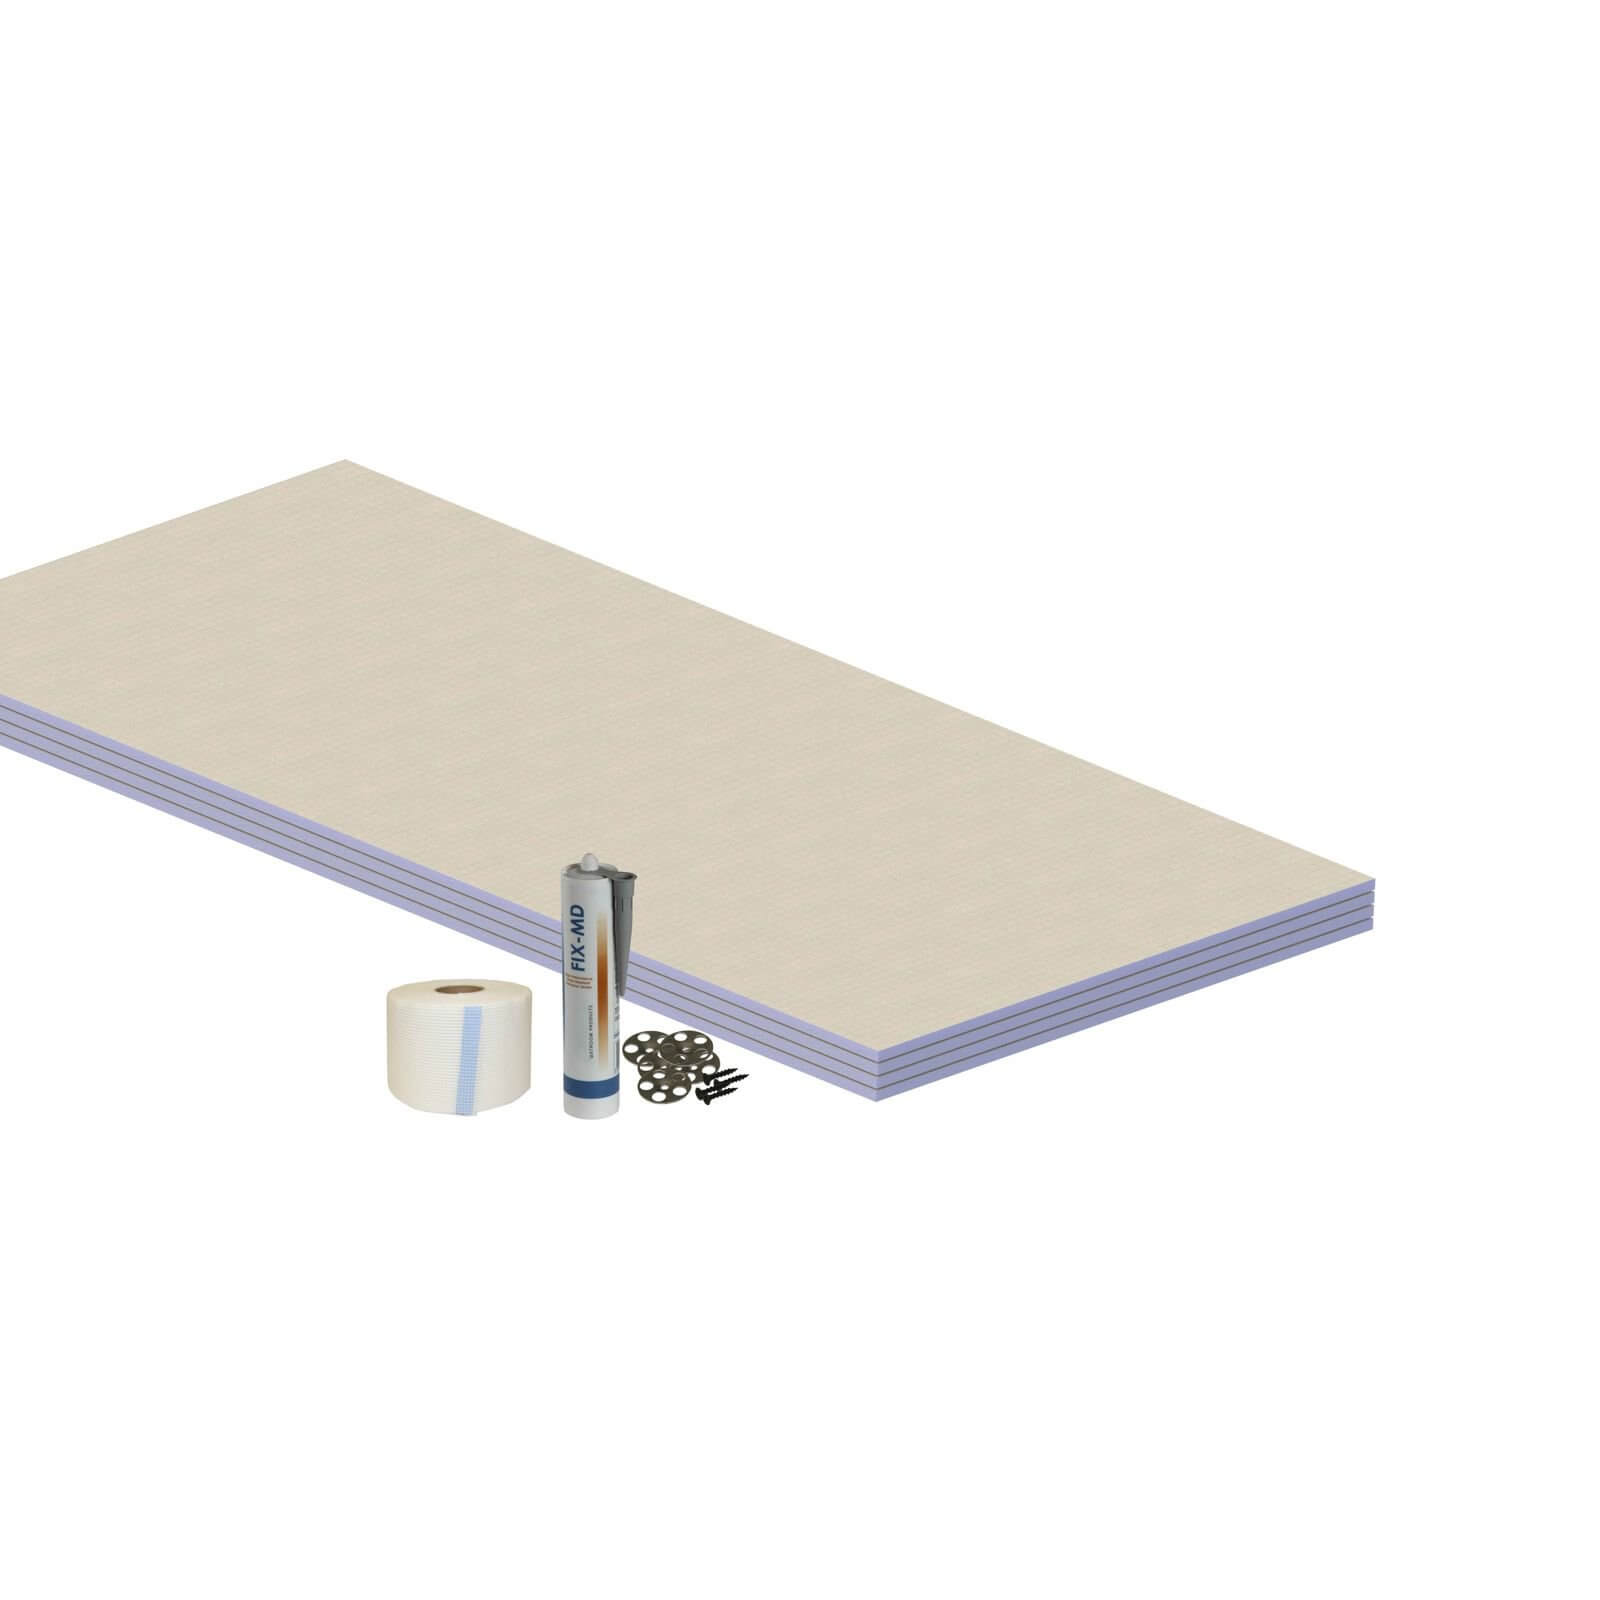 Waterproof Board Floor Kit - 2.88 Sqm